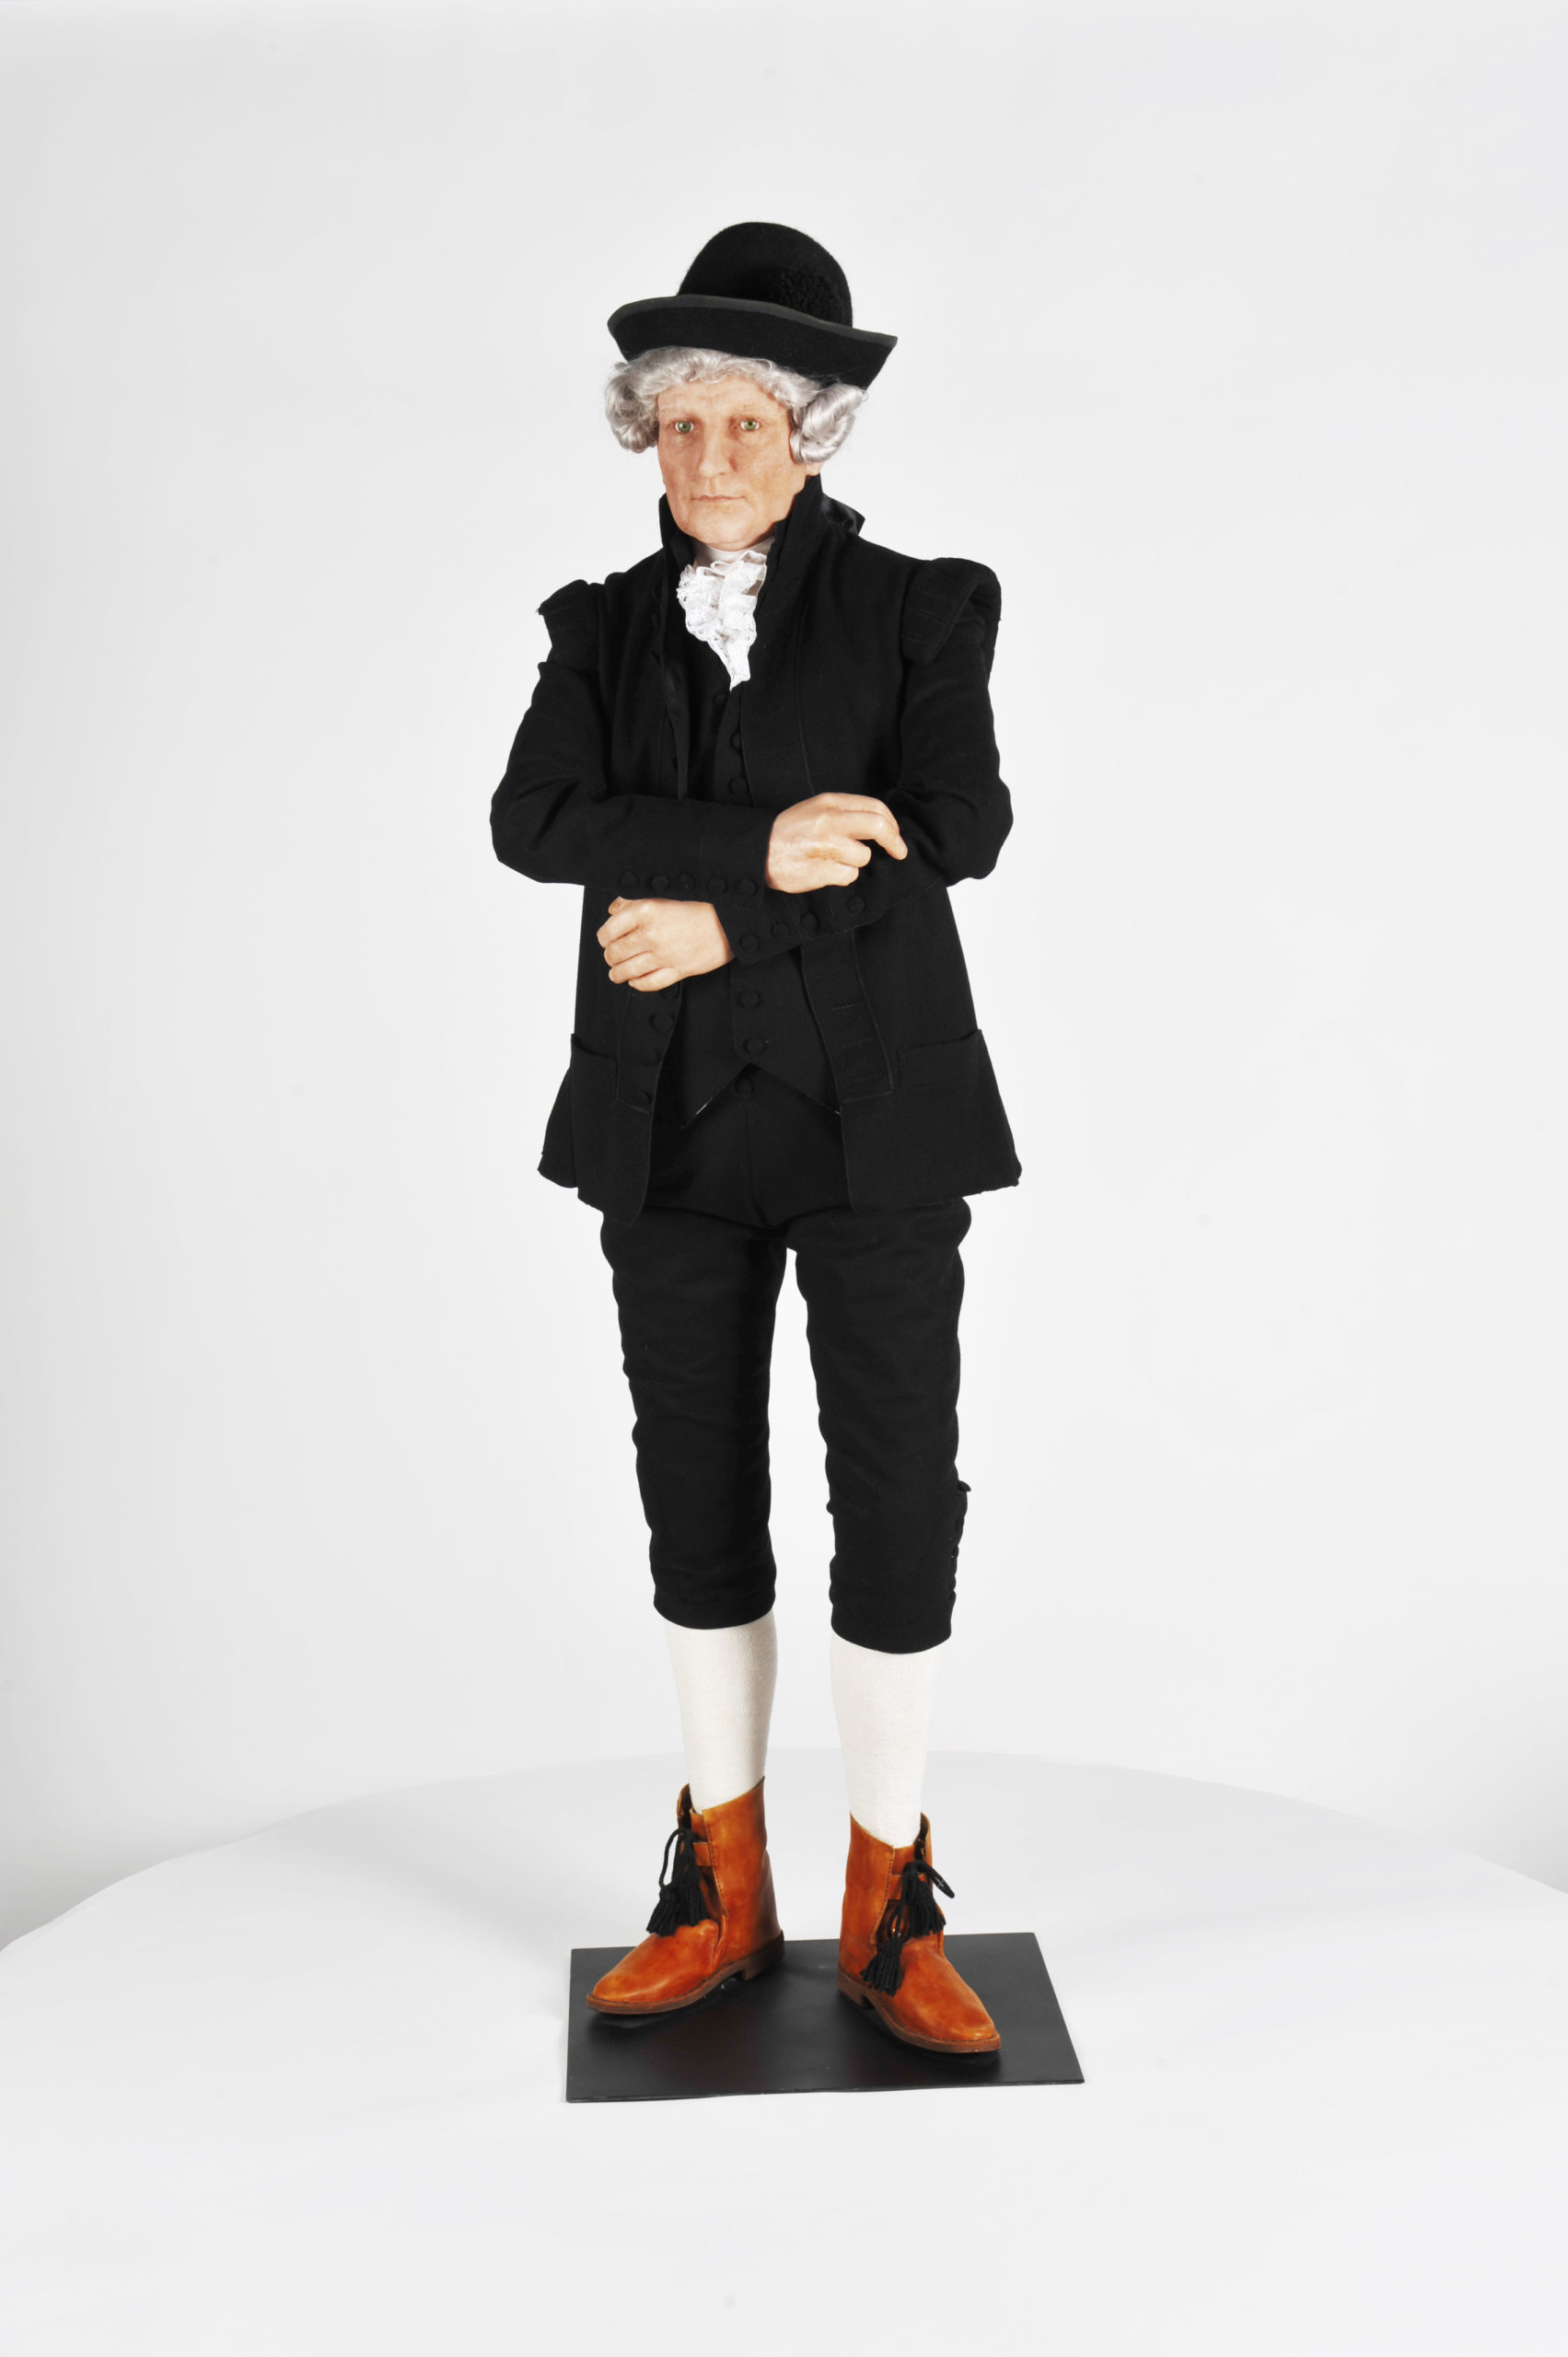 Mallinuken päällä 1700-luvun virkapuku, jossa on hattu, takki, valkoinen kaulusröyhelö, housut ja polvisukat sekä kengät.